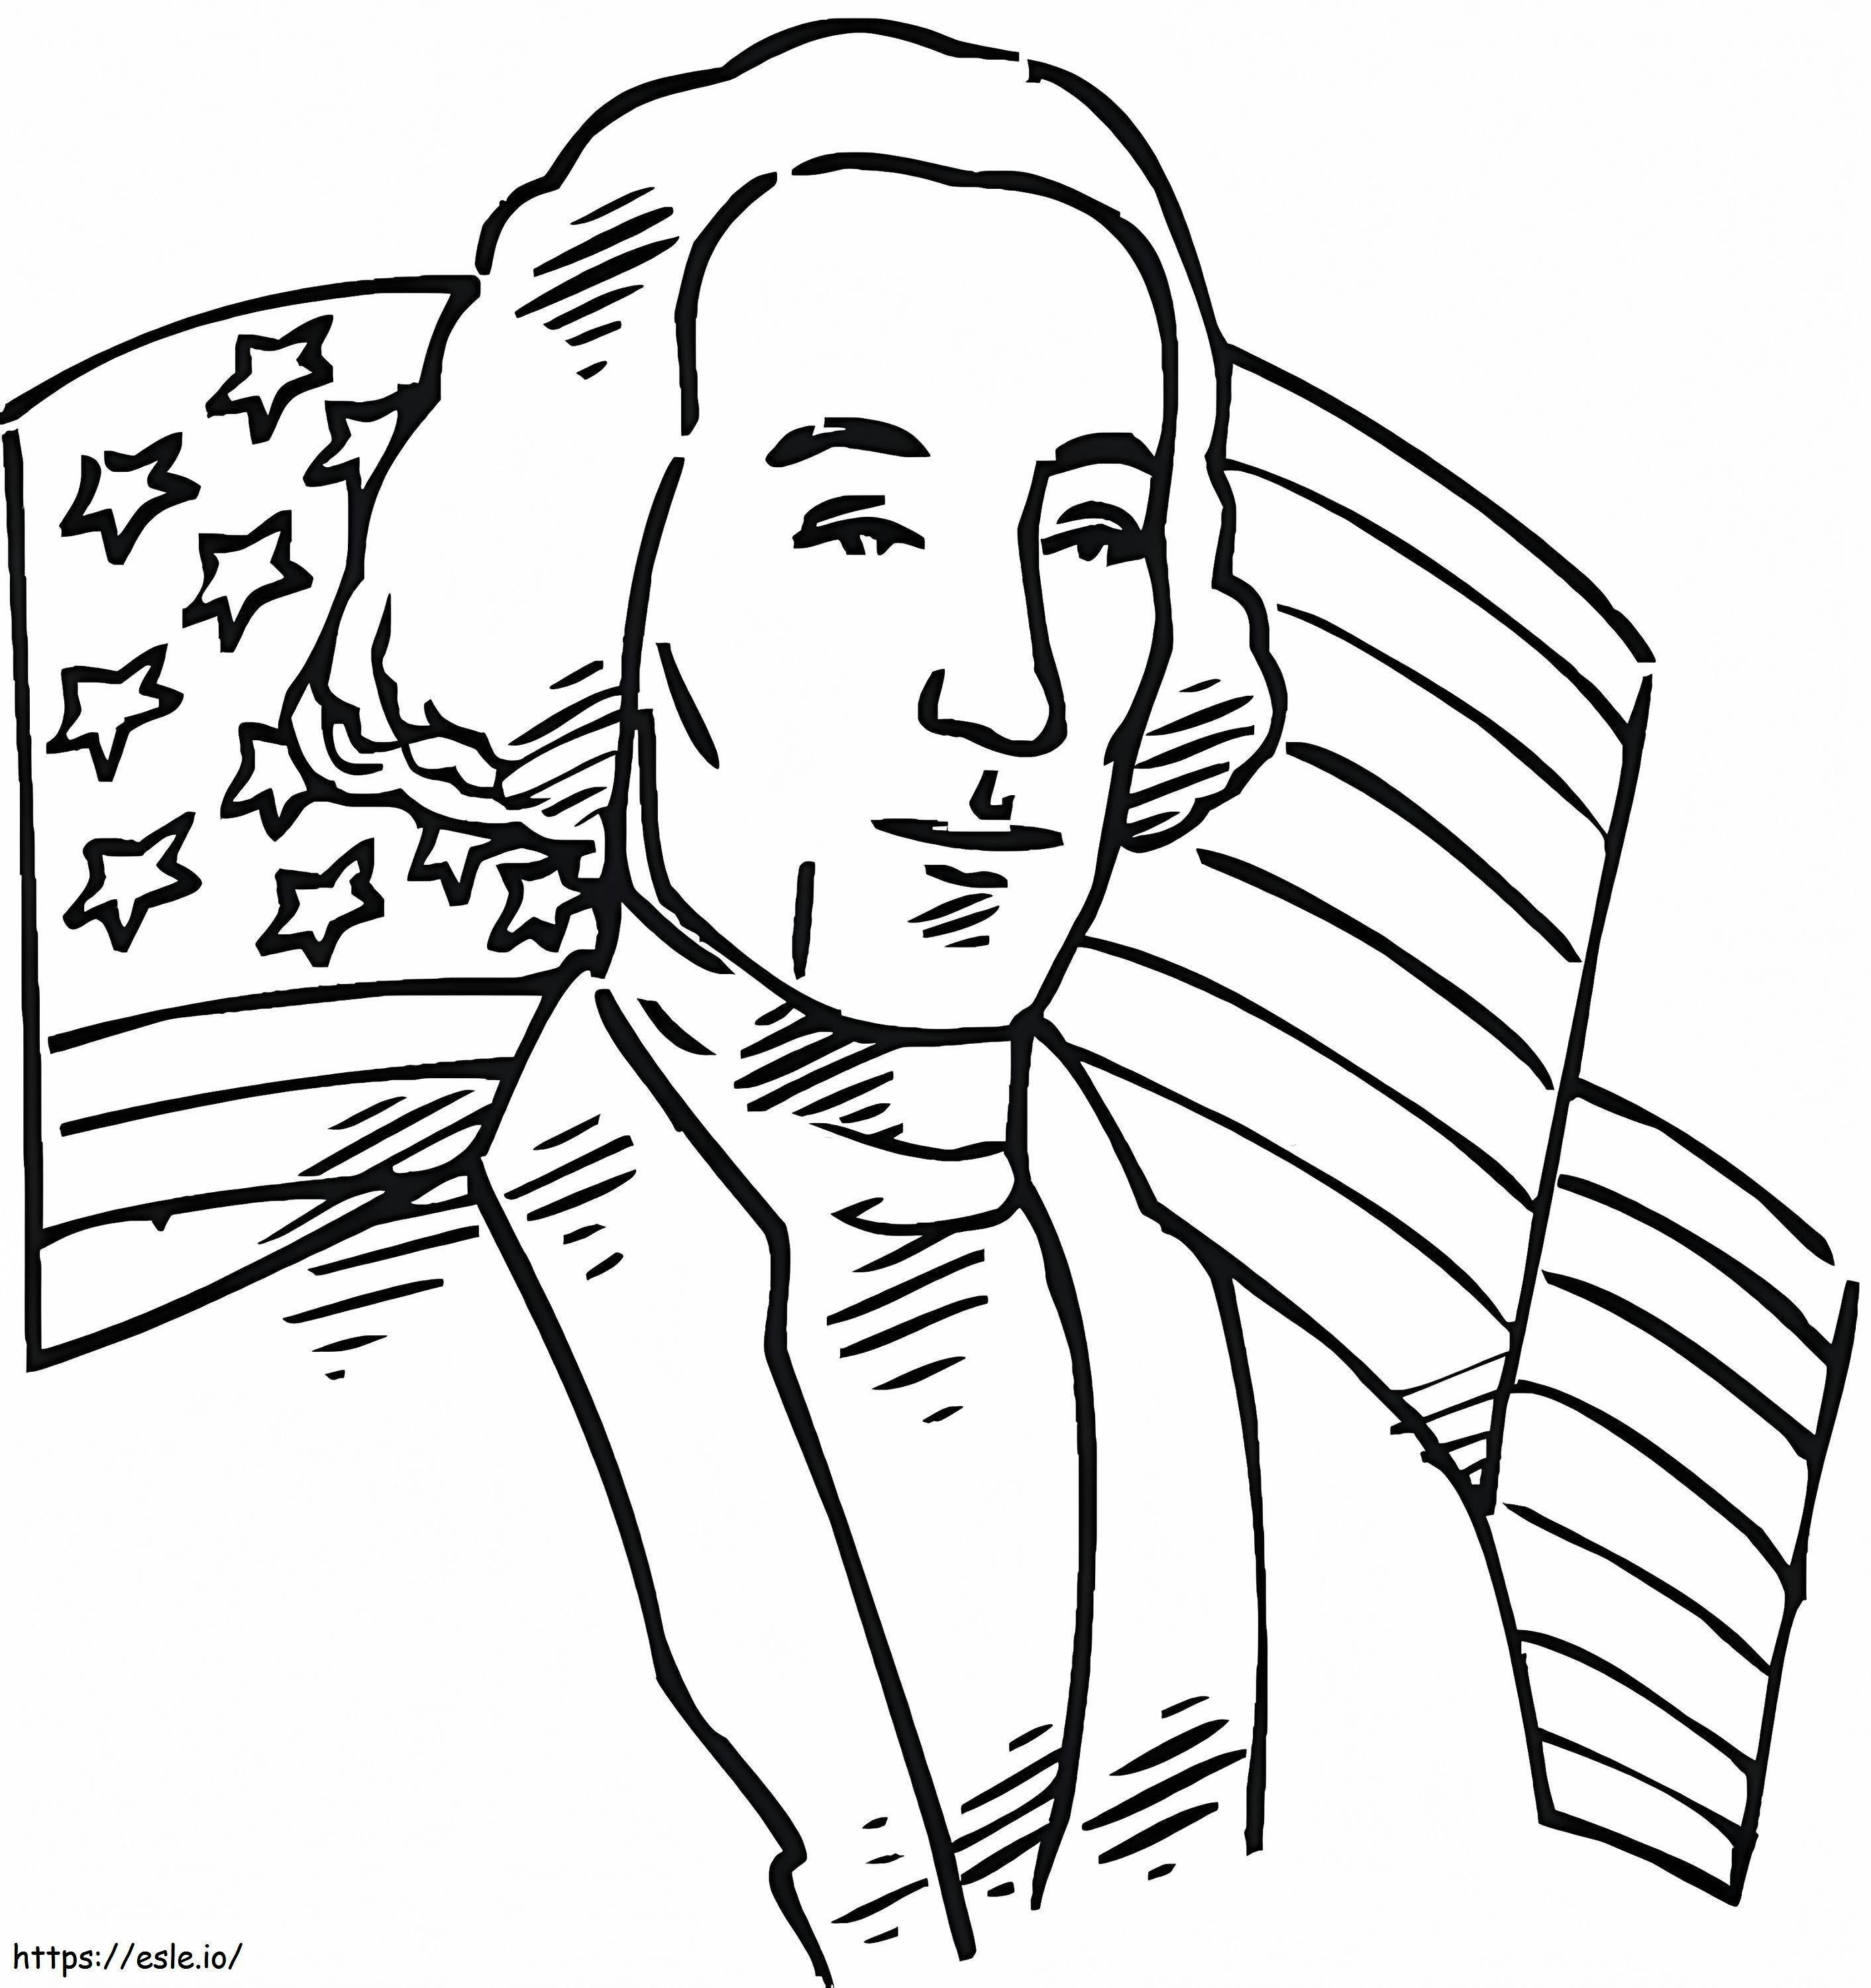 Il primo presidente degli Stati Uniti George Washington da colorare